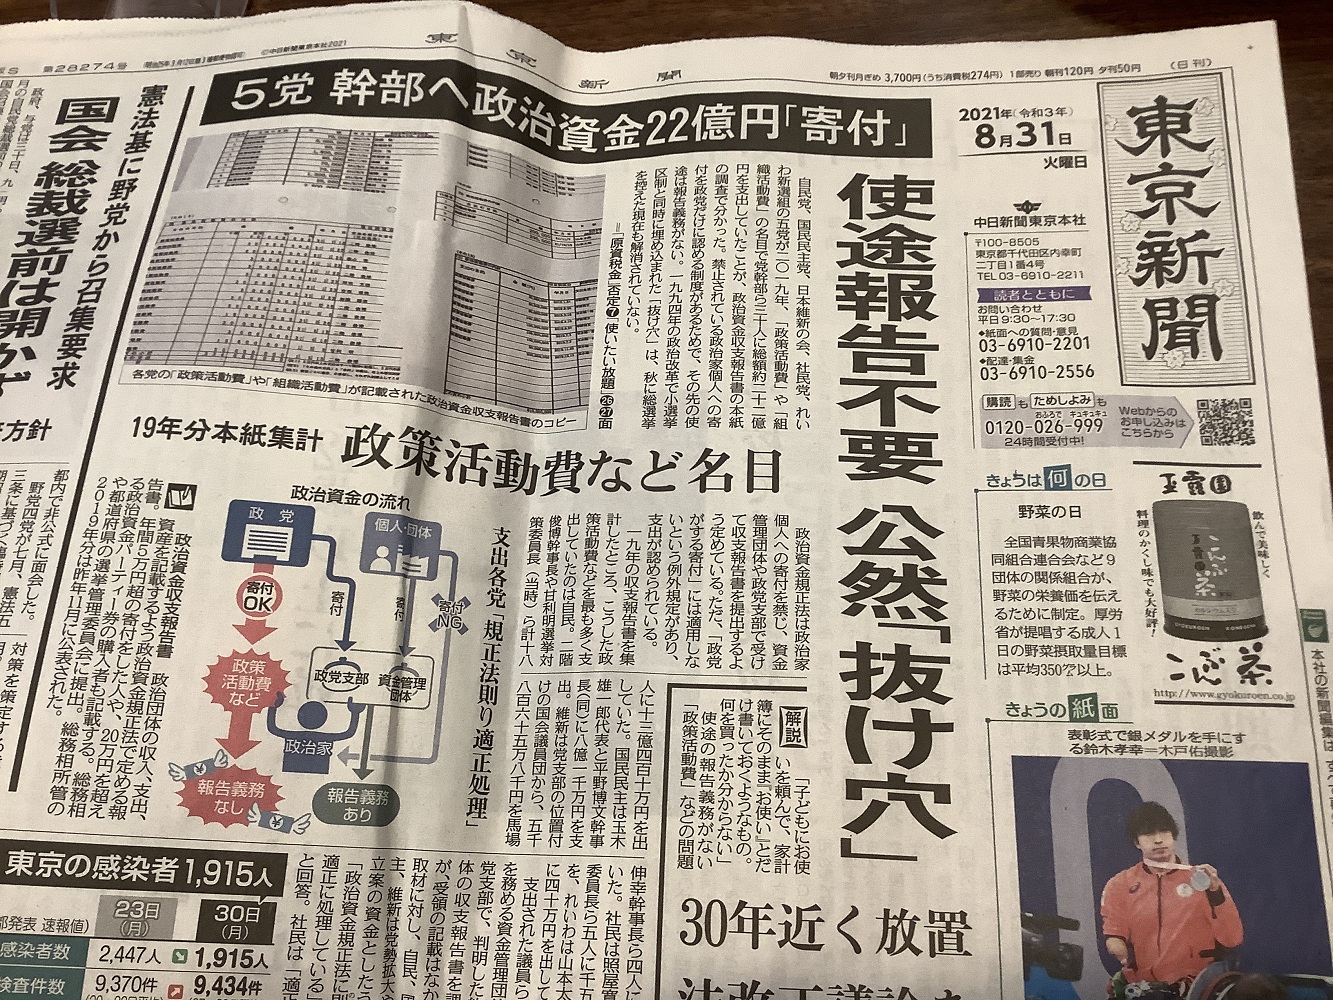 東京新聞今天頭版頭條也是針對二階等提走鉅額政治資金，帳目不清等作了批判性報導，這也是逼二階下台的原因之一。 圖：攝自東京新聞